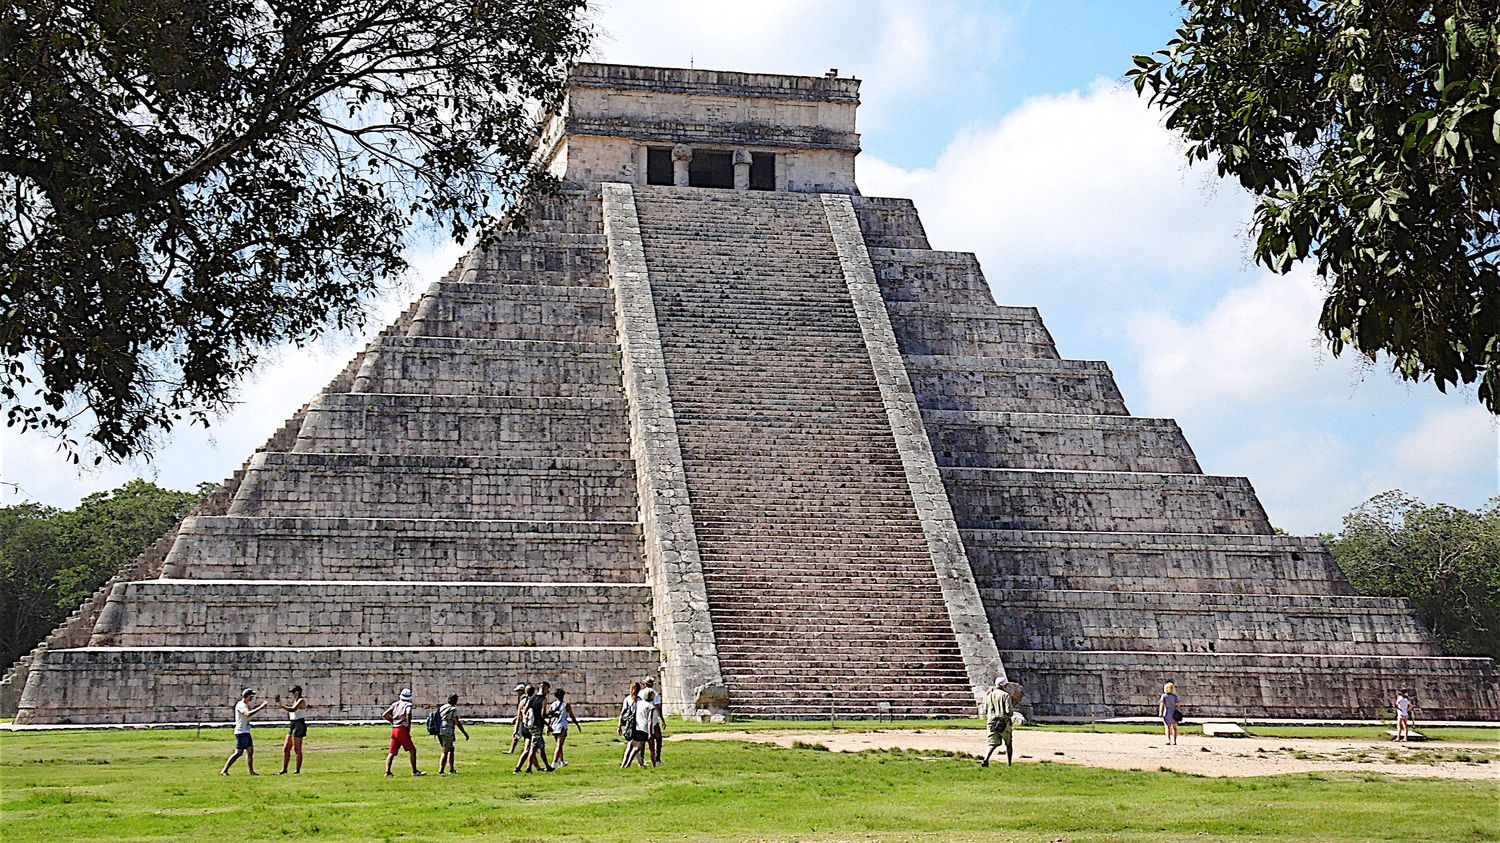 l'un des secrets de longévité des cités maya mis au jour